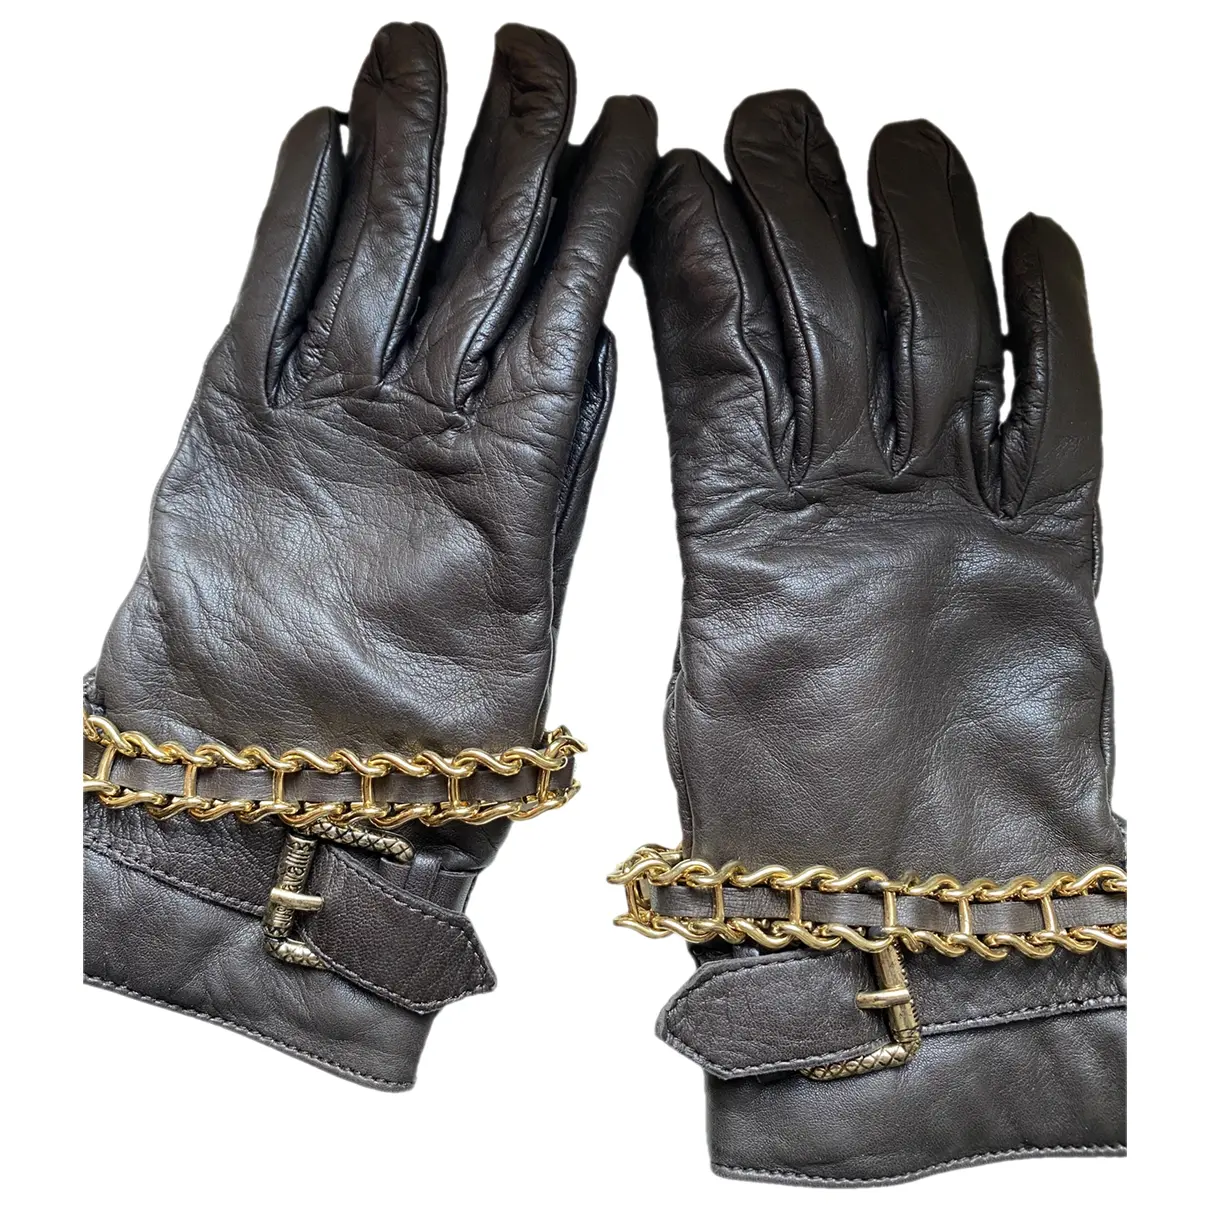 Leather gloves Just Cavalli - Vintage